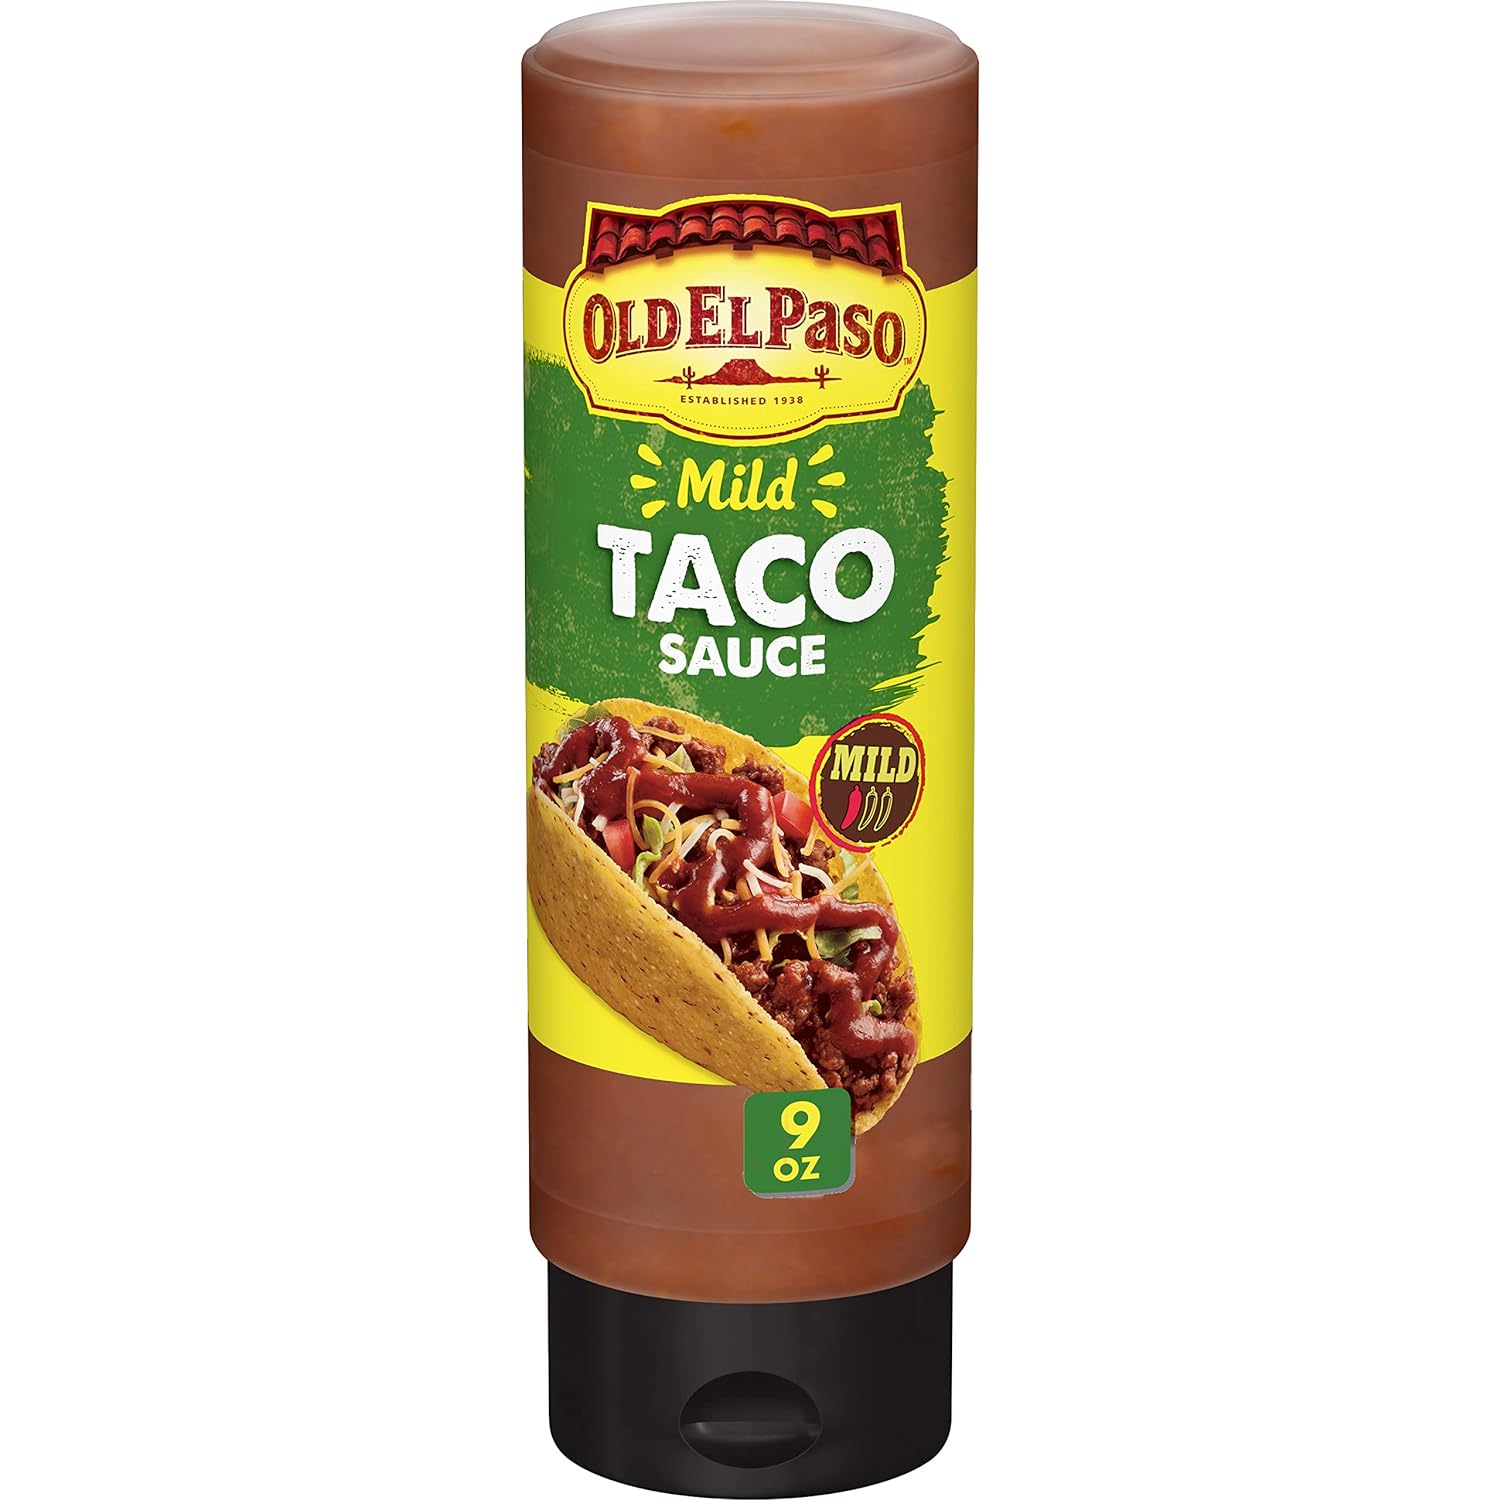 Old El Paso Taco Sauce, Mild, Squeeze Bottle, 9 oz